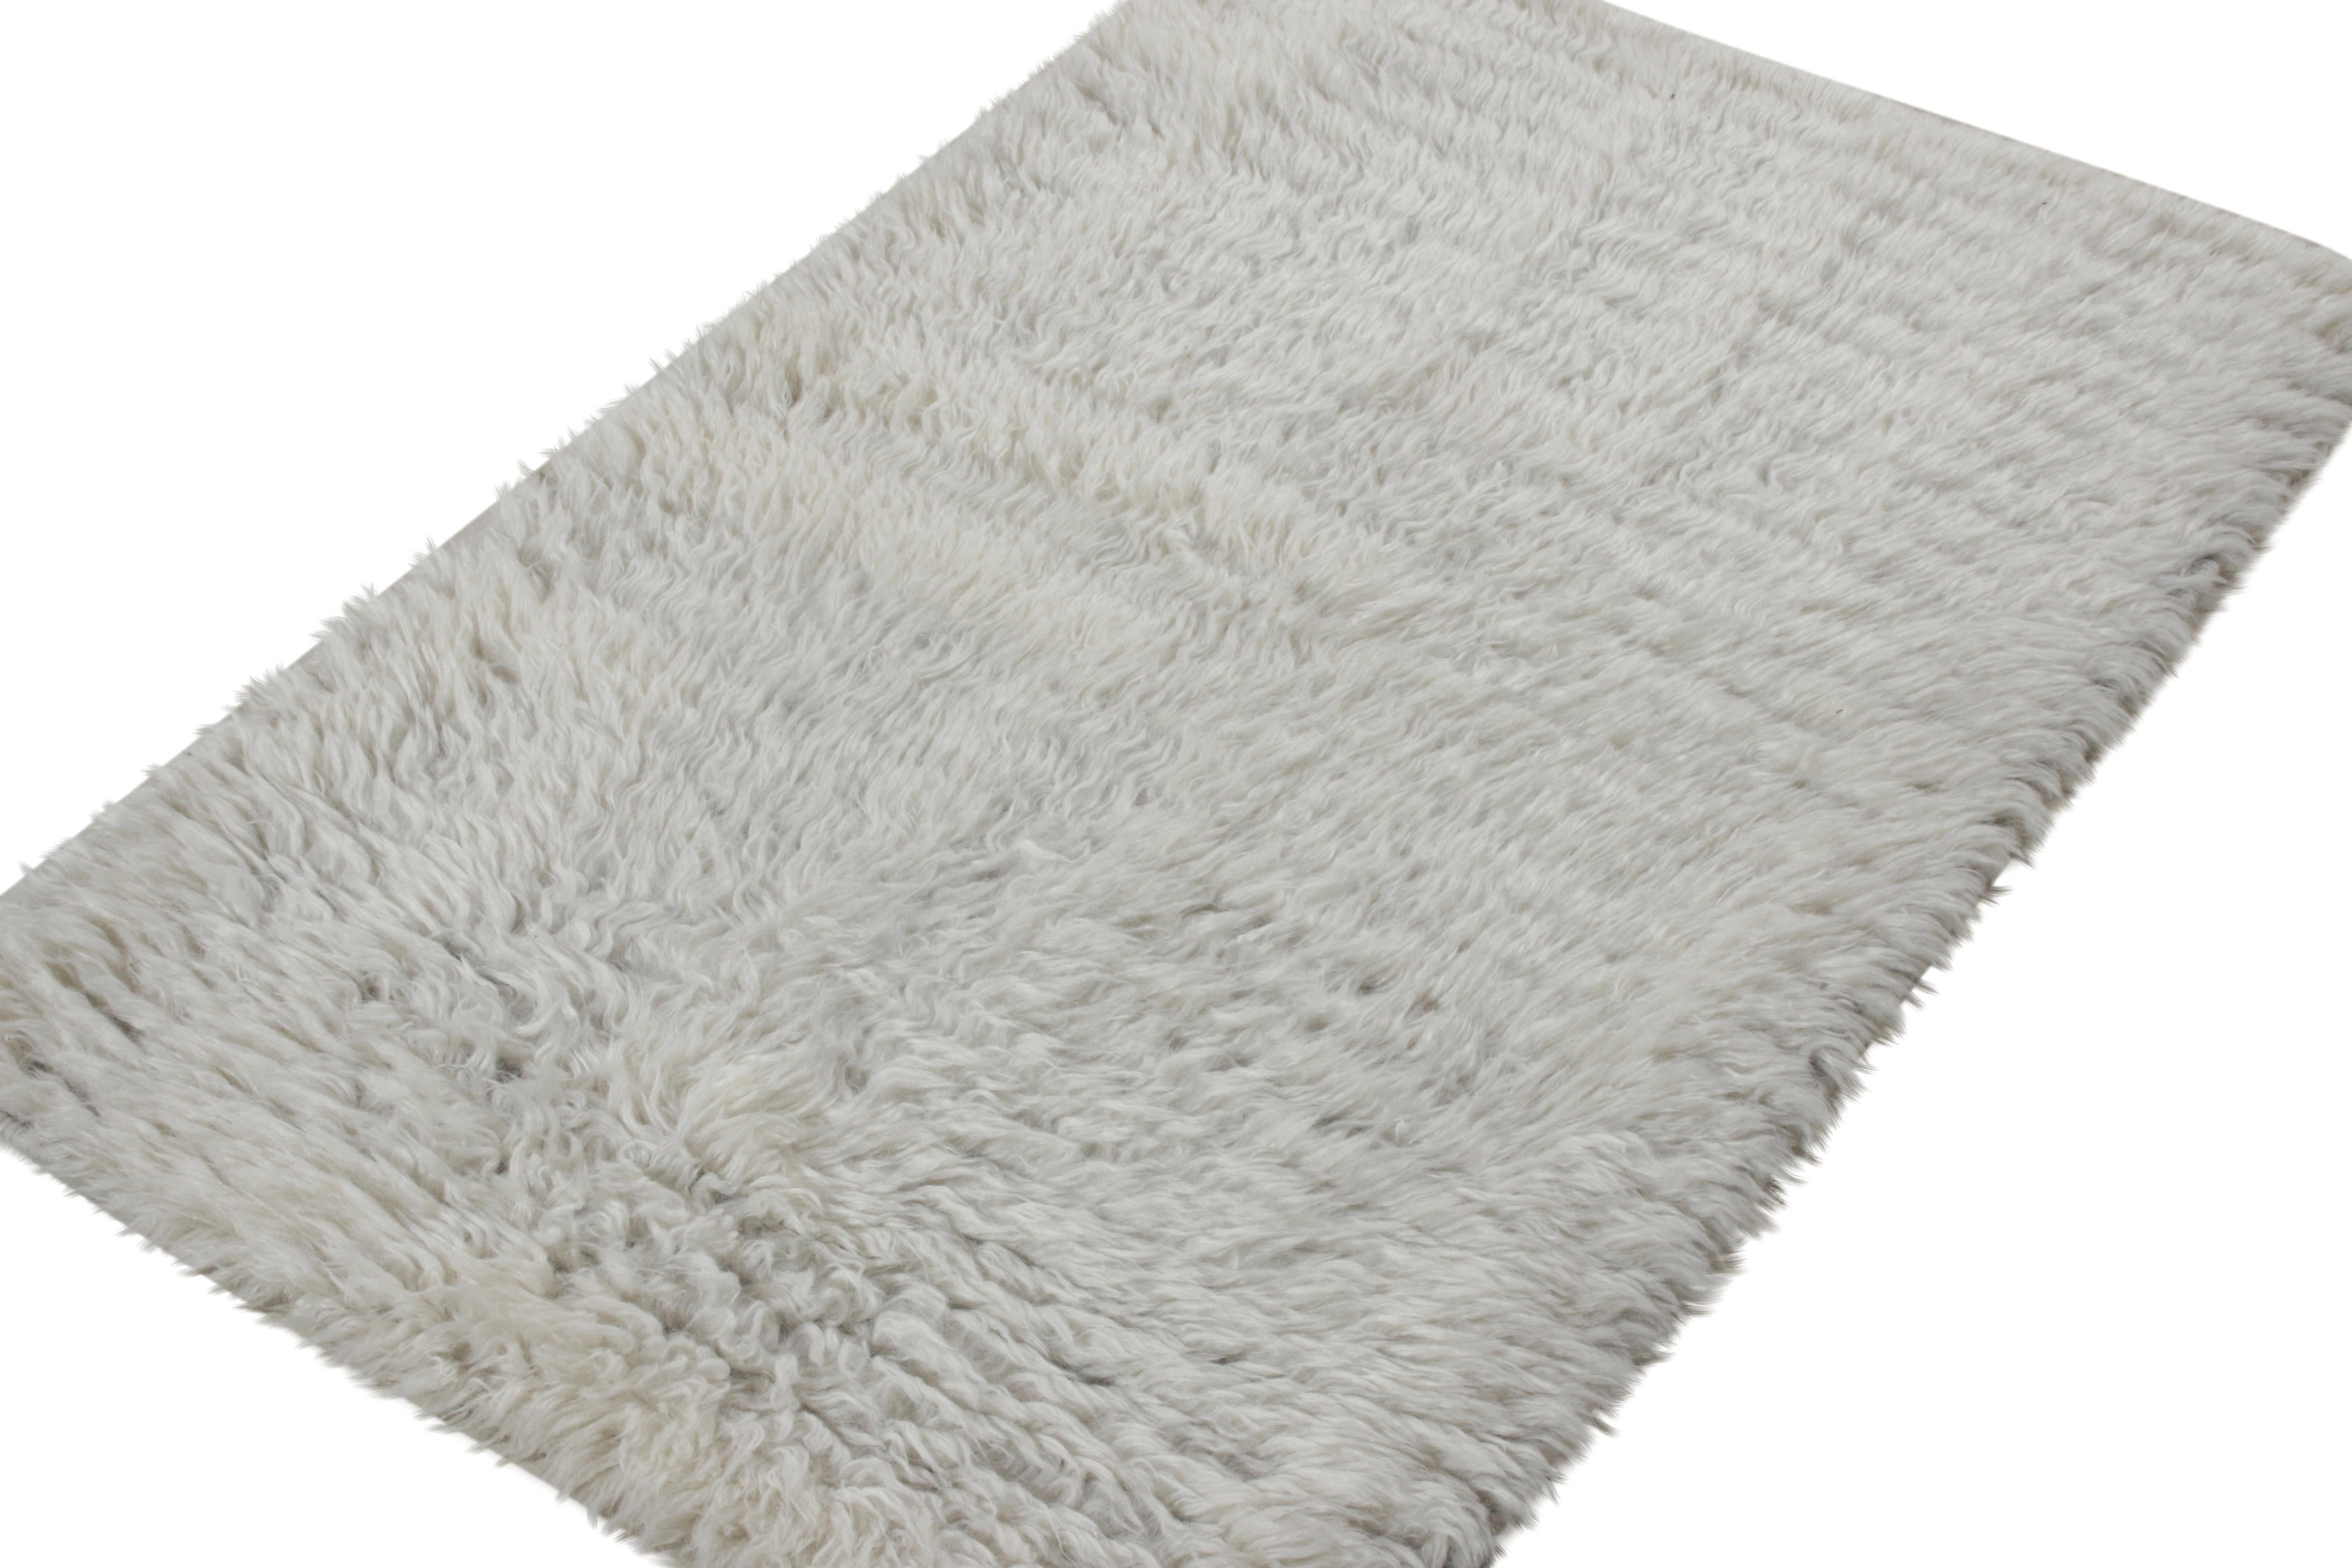 Handgeknüpft aus hochwertiger Wolle, ein 3×4 Teppich im marokkanischen Stil von Rug & Kilim. Der Teppich ist ein Beispiel für zeitgenössische Ästhetik und hat einen unifarbenen weißen Flor, der für ein beruhigendes Auftreten sorgt. Ein individuelles